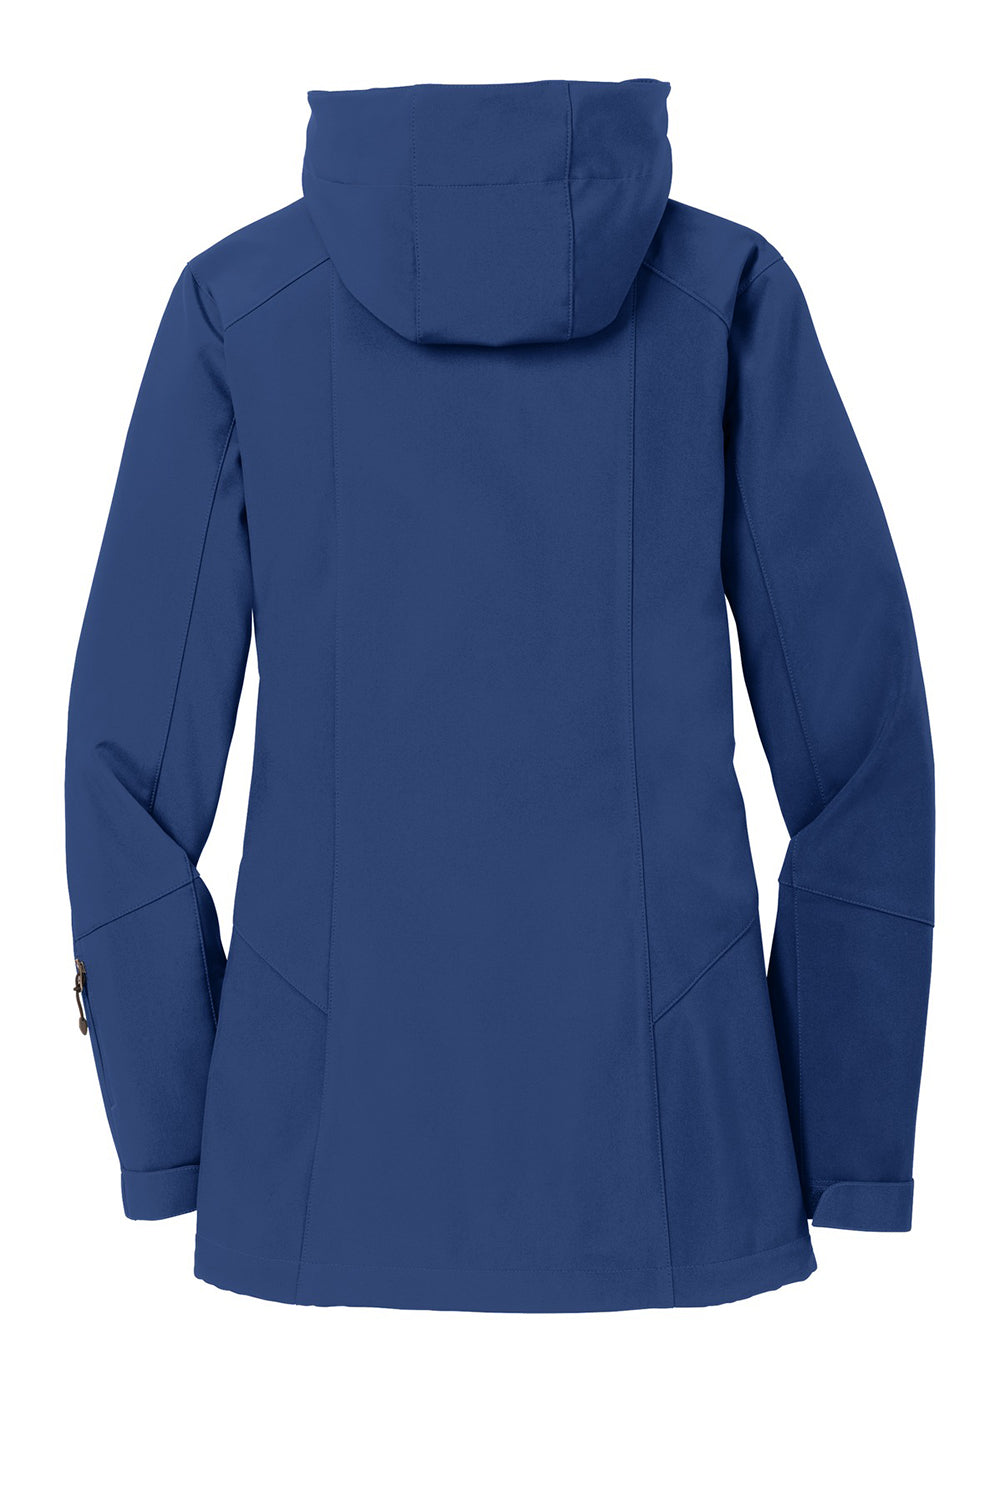 Eddie Bauer EB537 Womens Water Resistant Full Zip Hooded Jacket Admiral Blue Flat Back